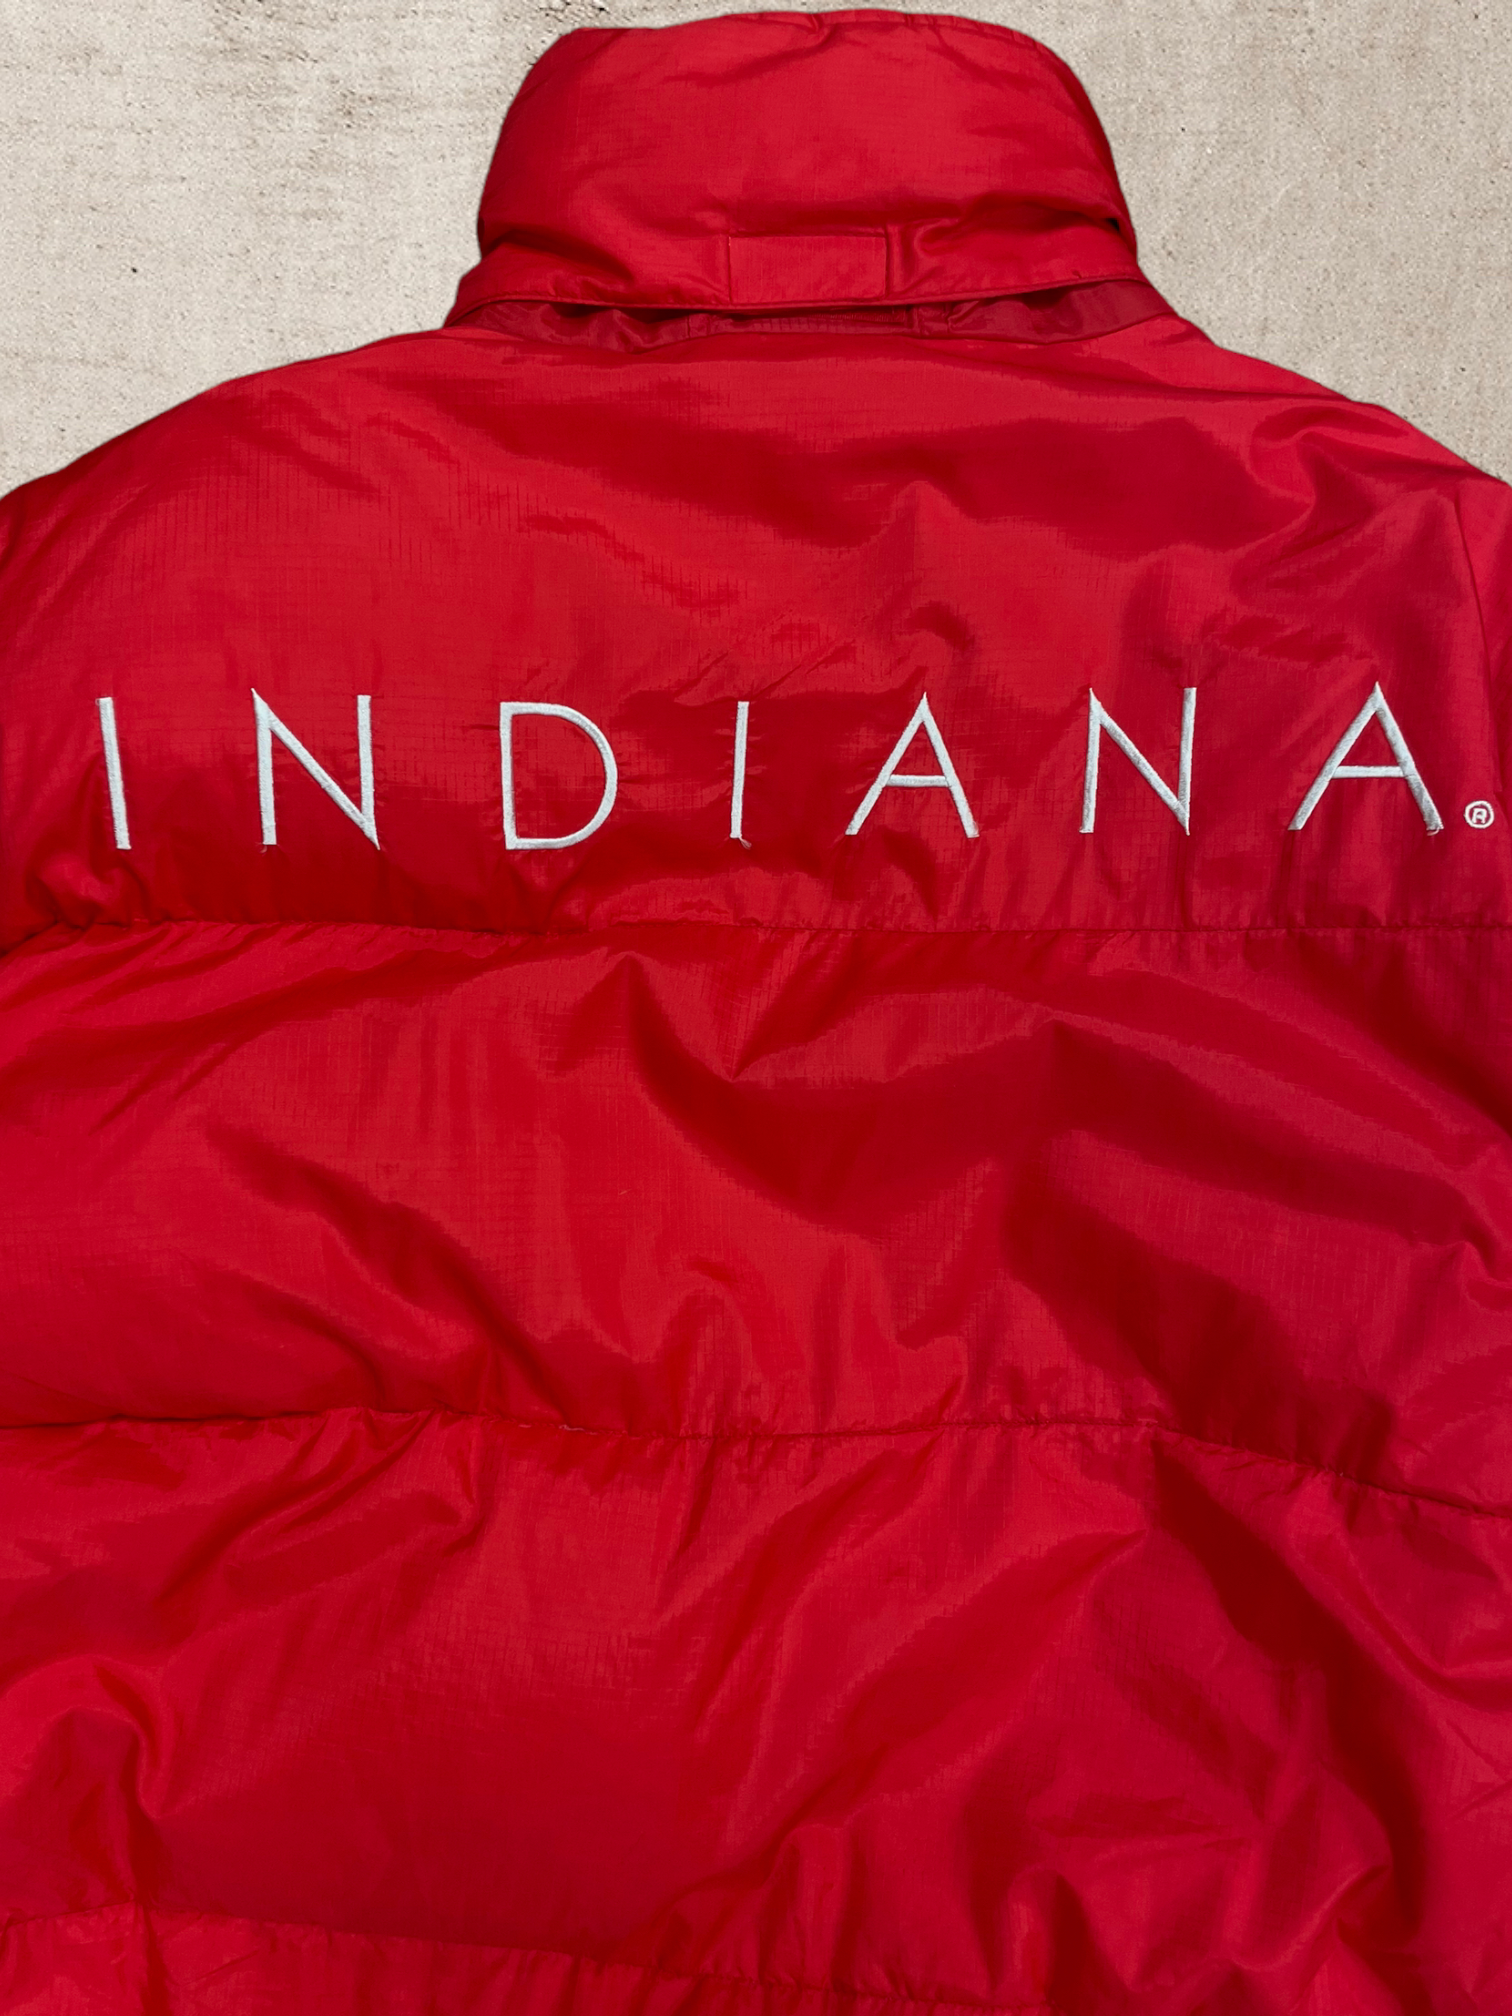 Vintage University of Indiana Puffer Jacket - Large